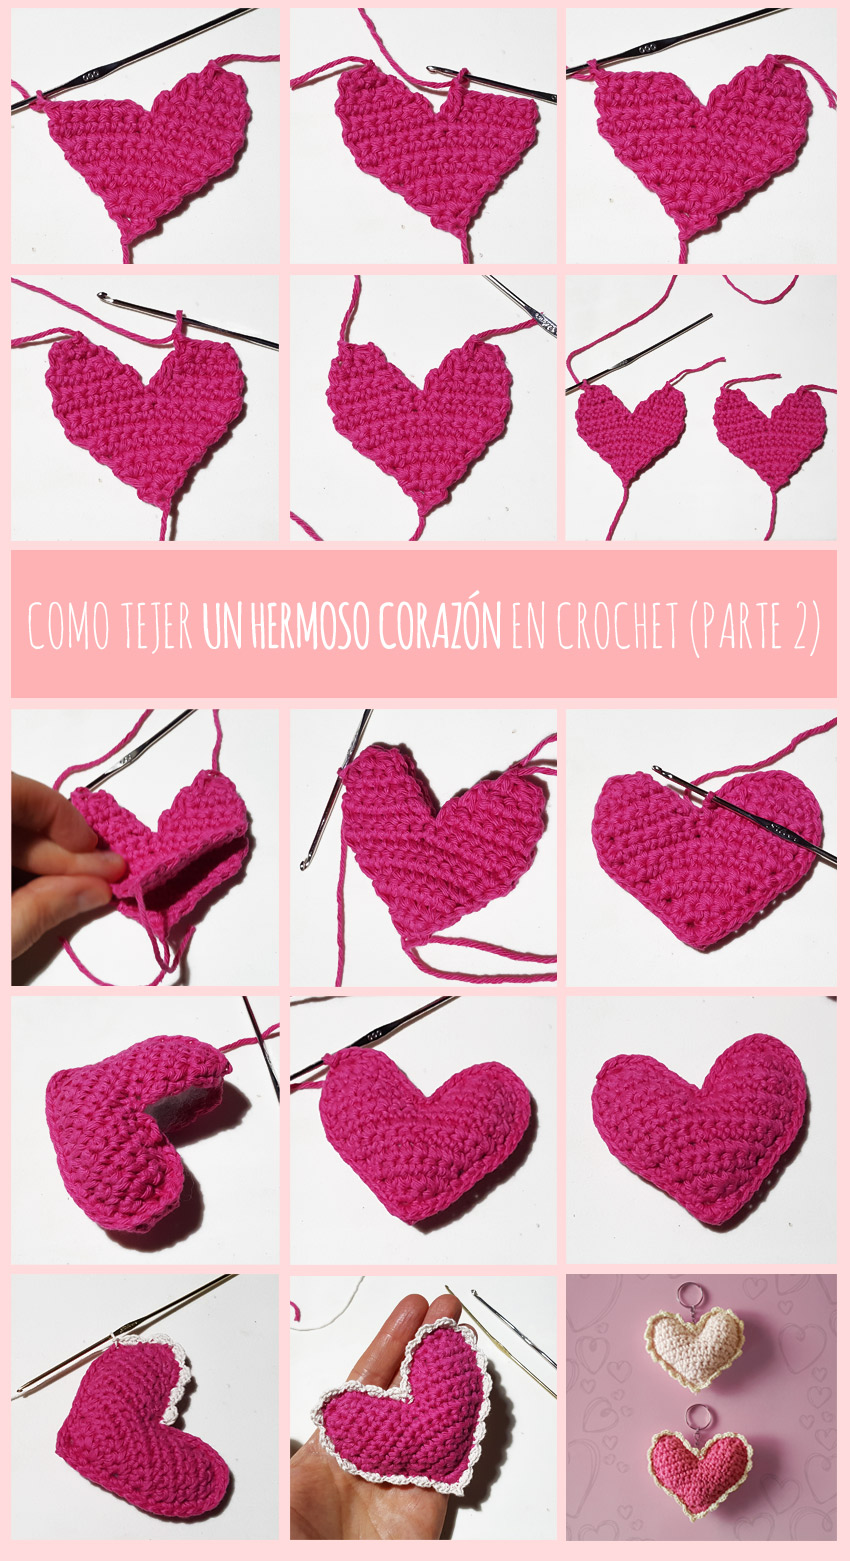 cosicasraquel: Post Invitado Vivir Patrón Corazón de Crochet